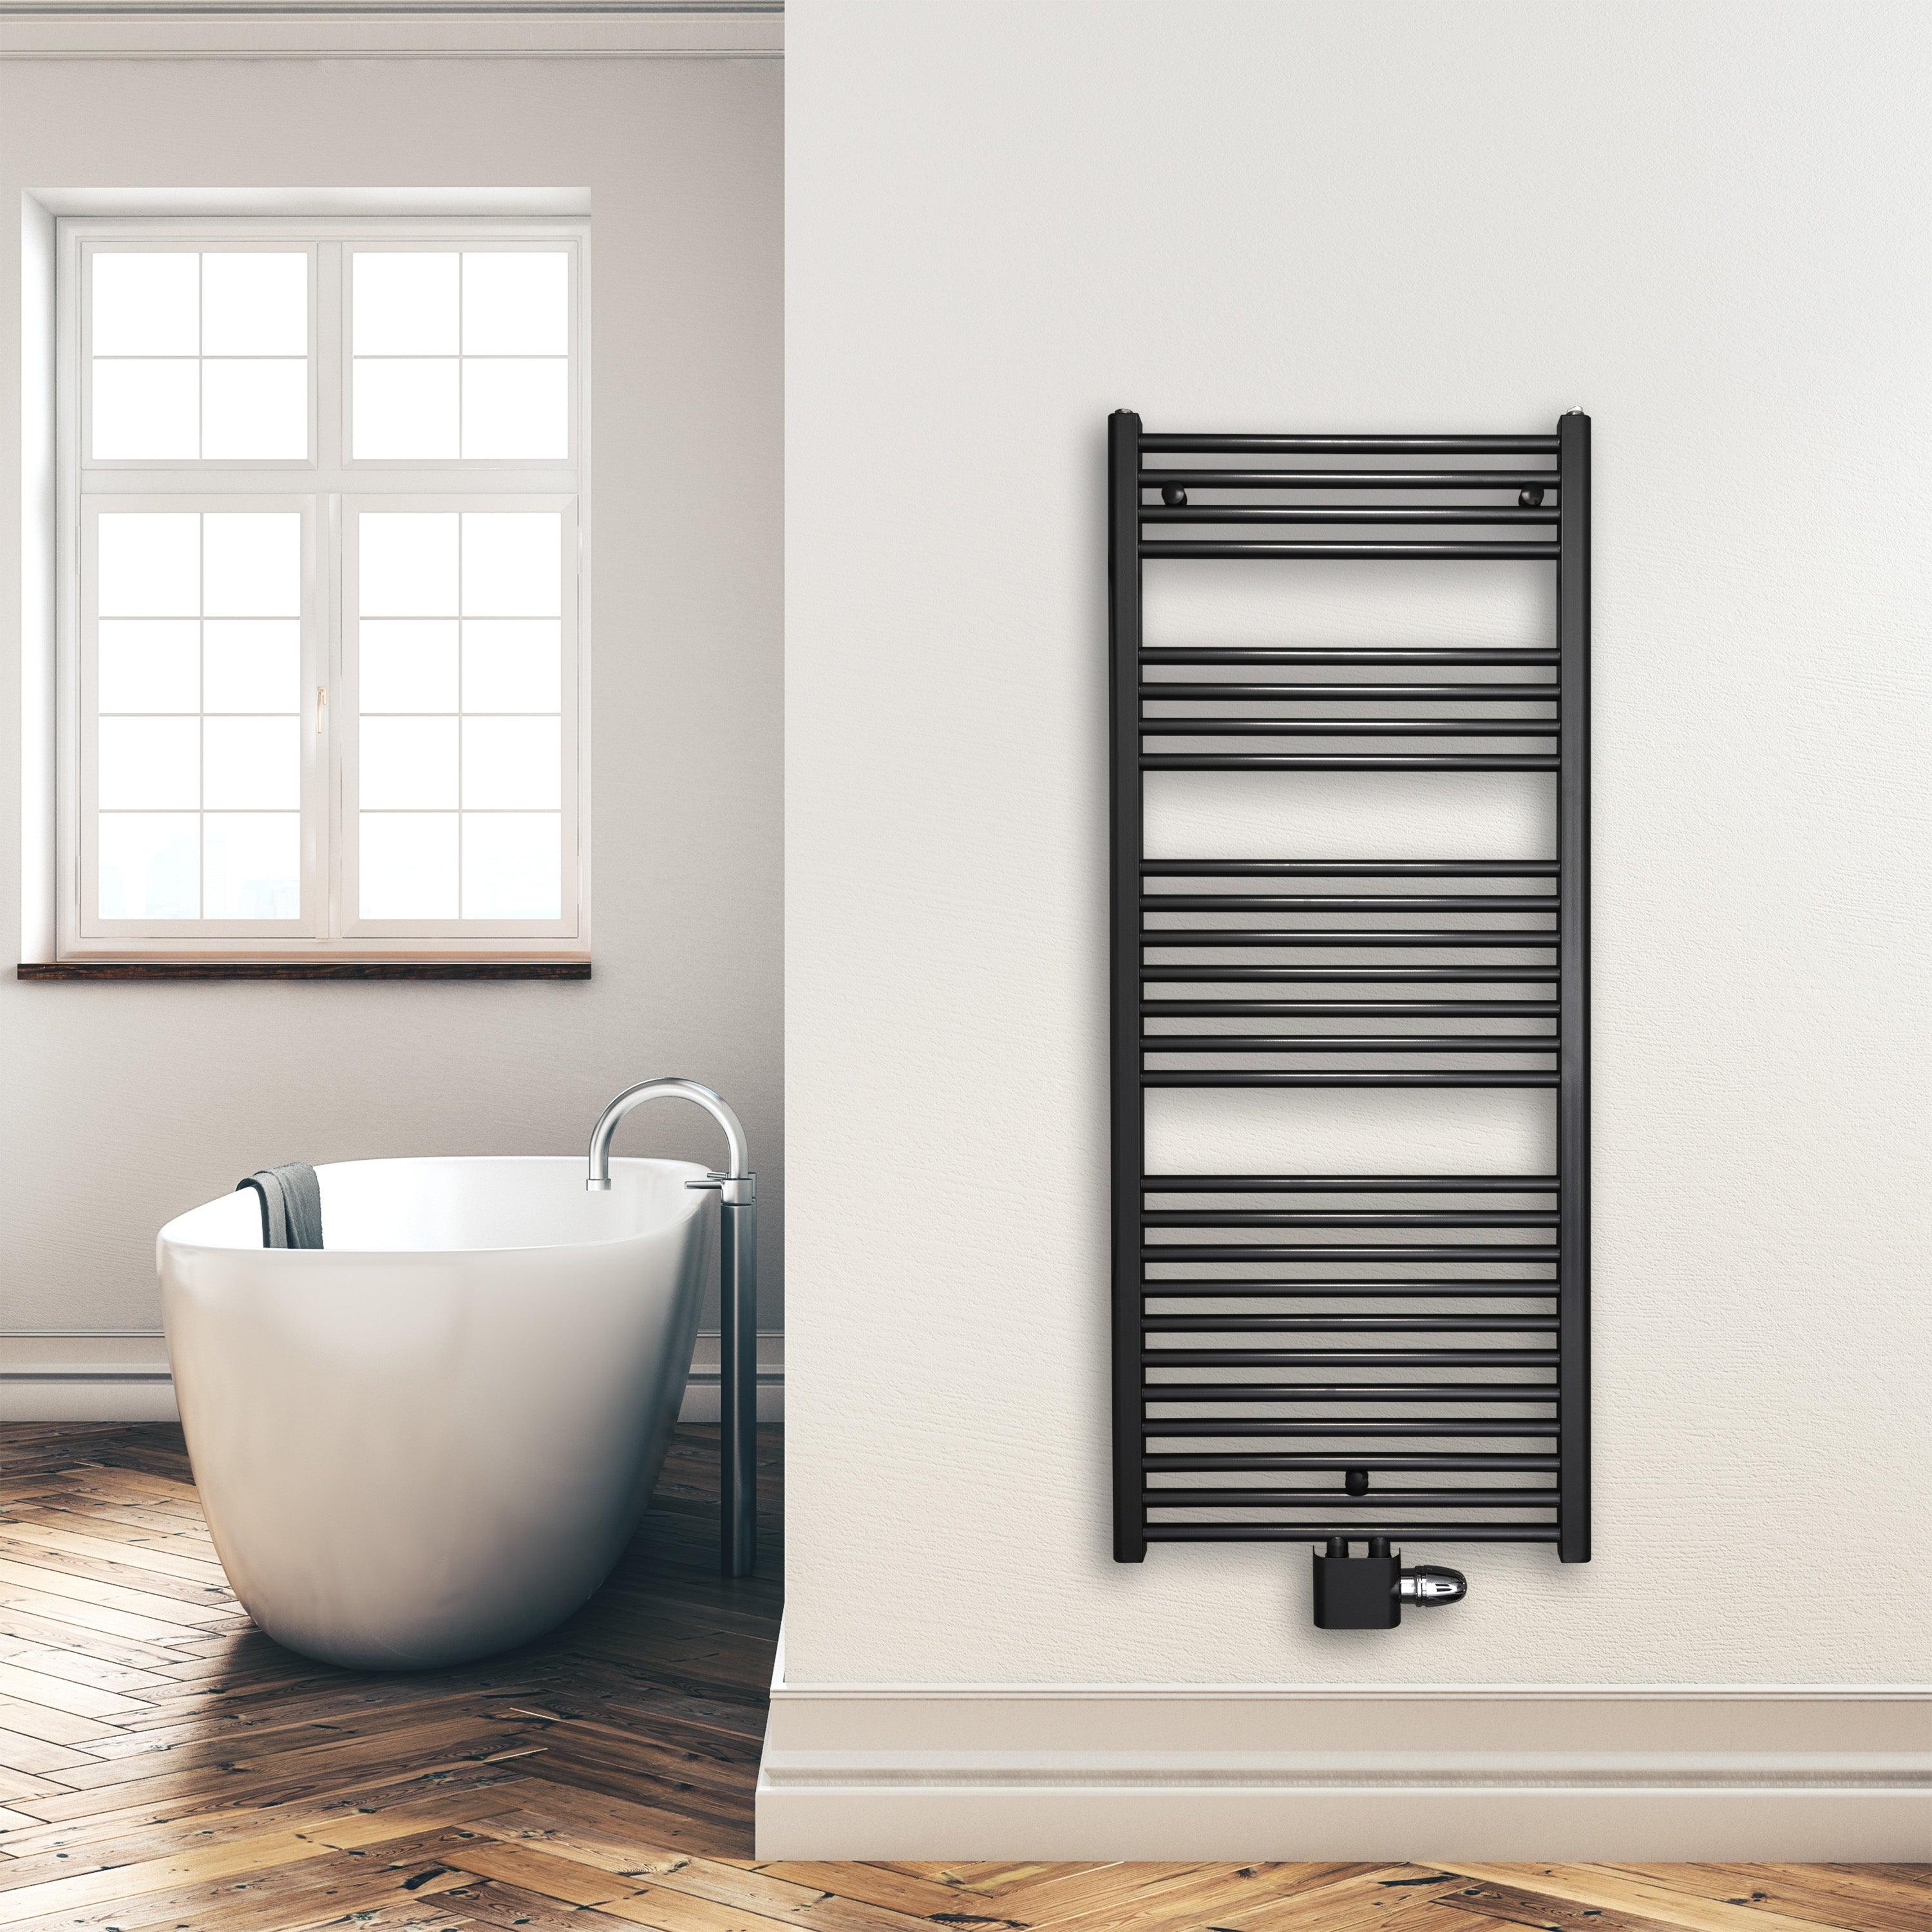 Badheizkörper 1424 x 600 mm gerade mit Mittenanschluss Handtuchhalter Badezimmer Heizung Handtuchwärmer schwarz Montagebeispiel - heizkoerper.shop